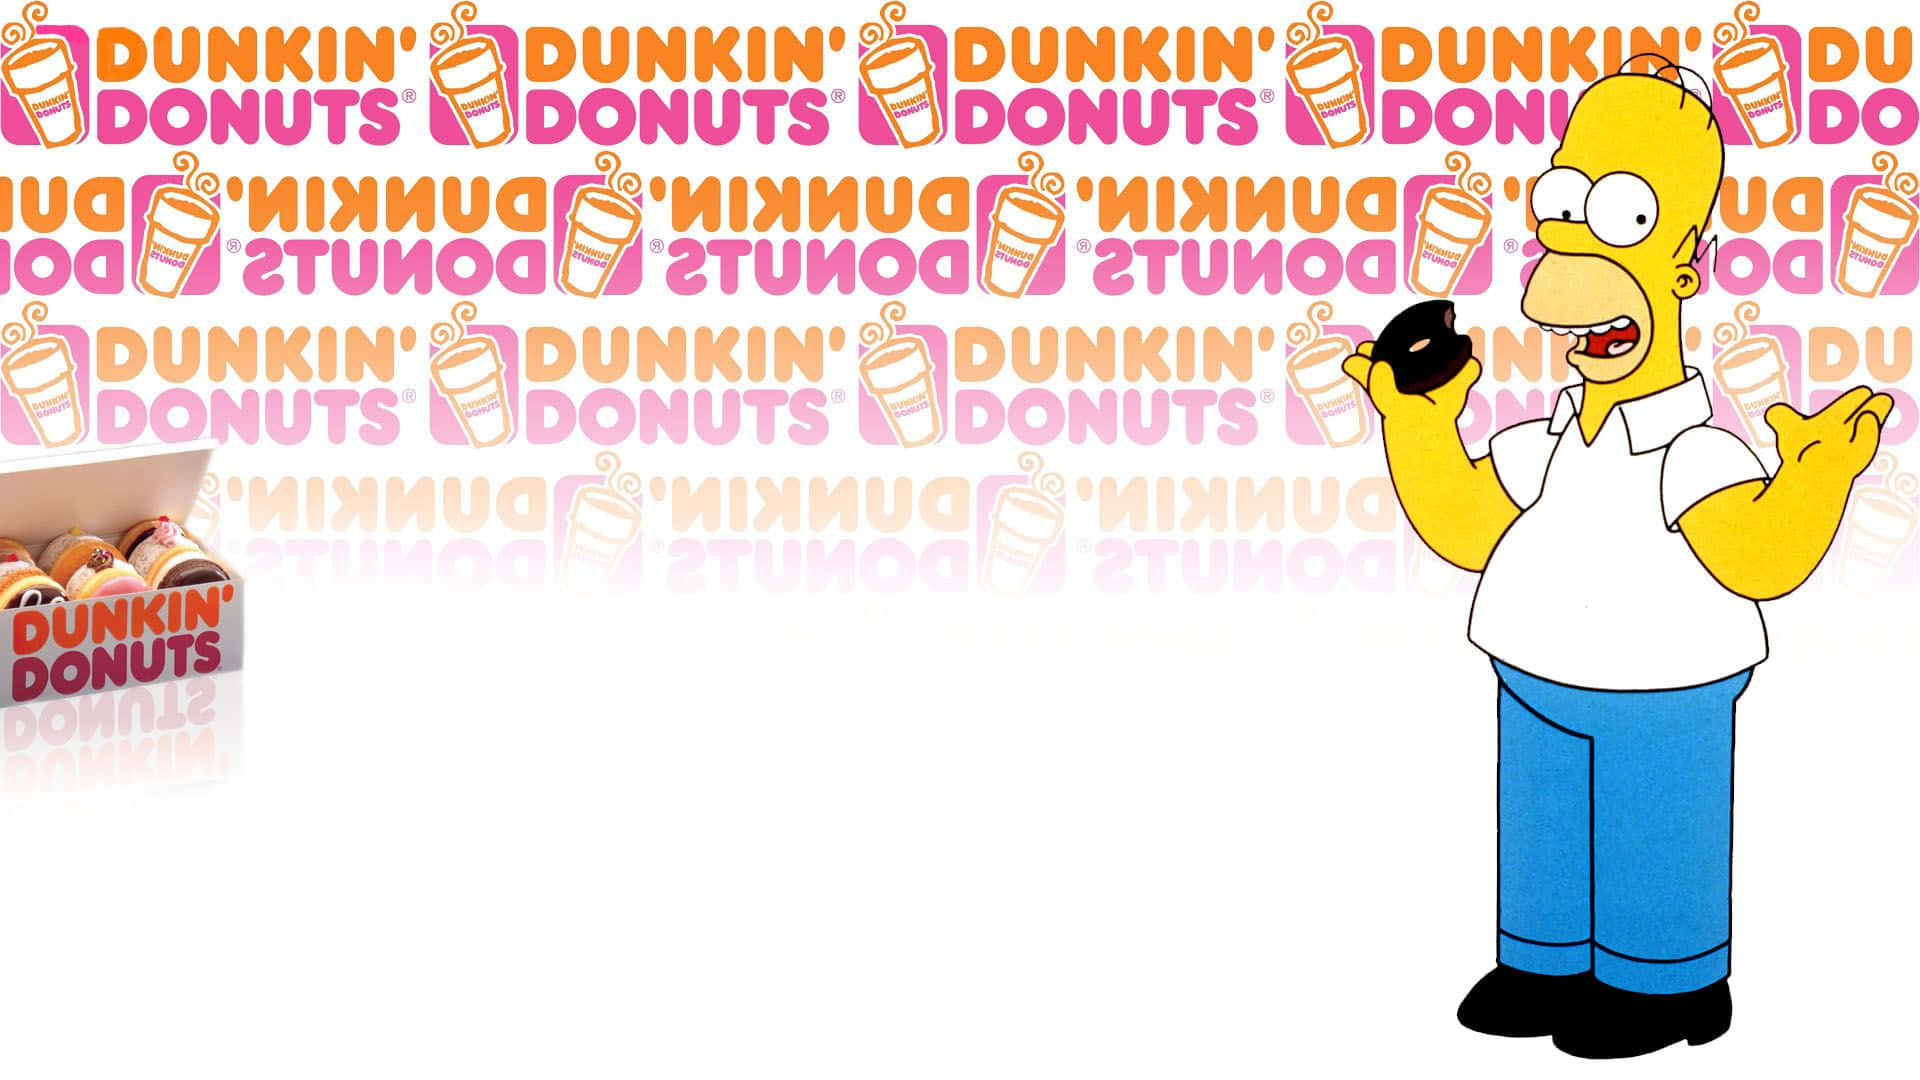 Tilfredsstildine Cravings Med Dunkin Donuts!